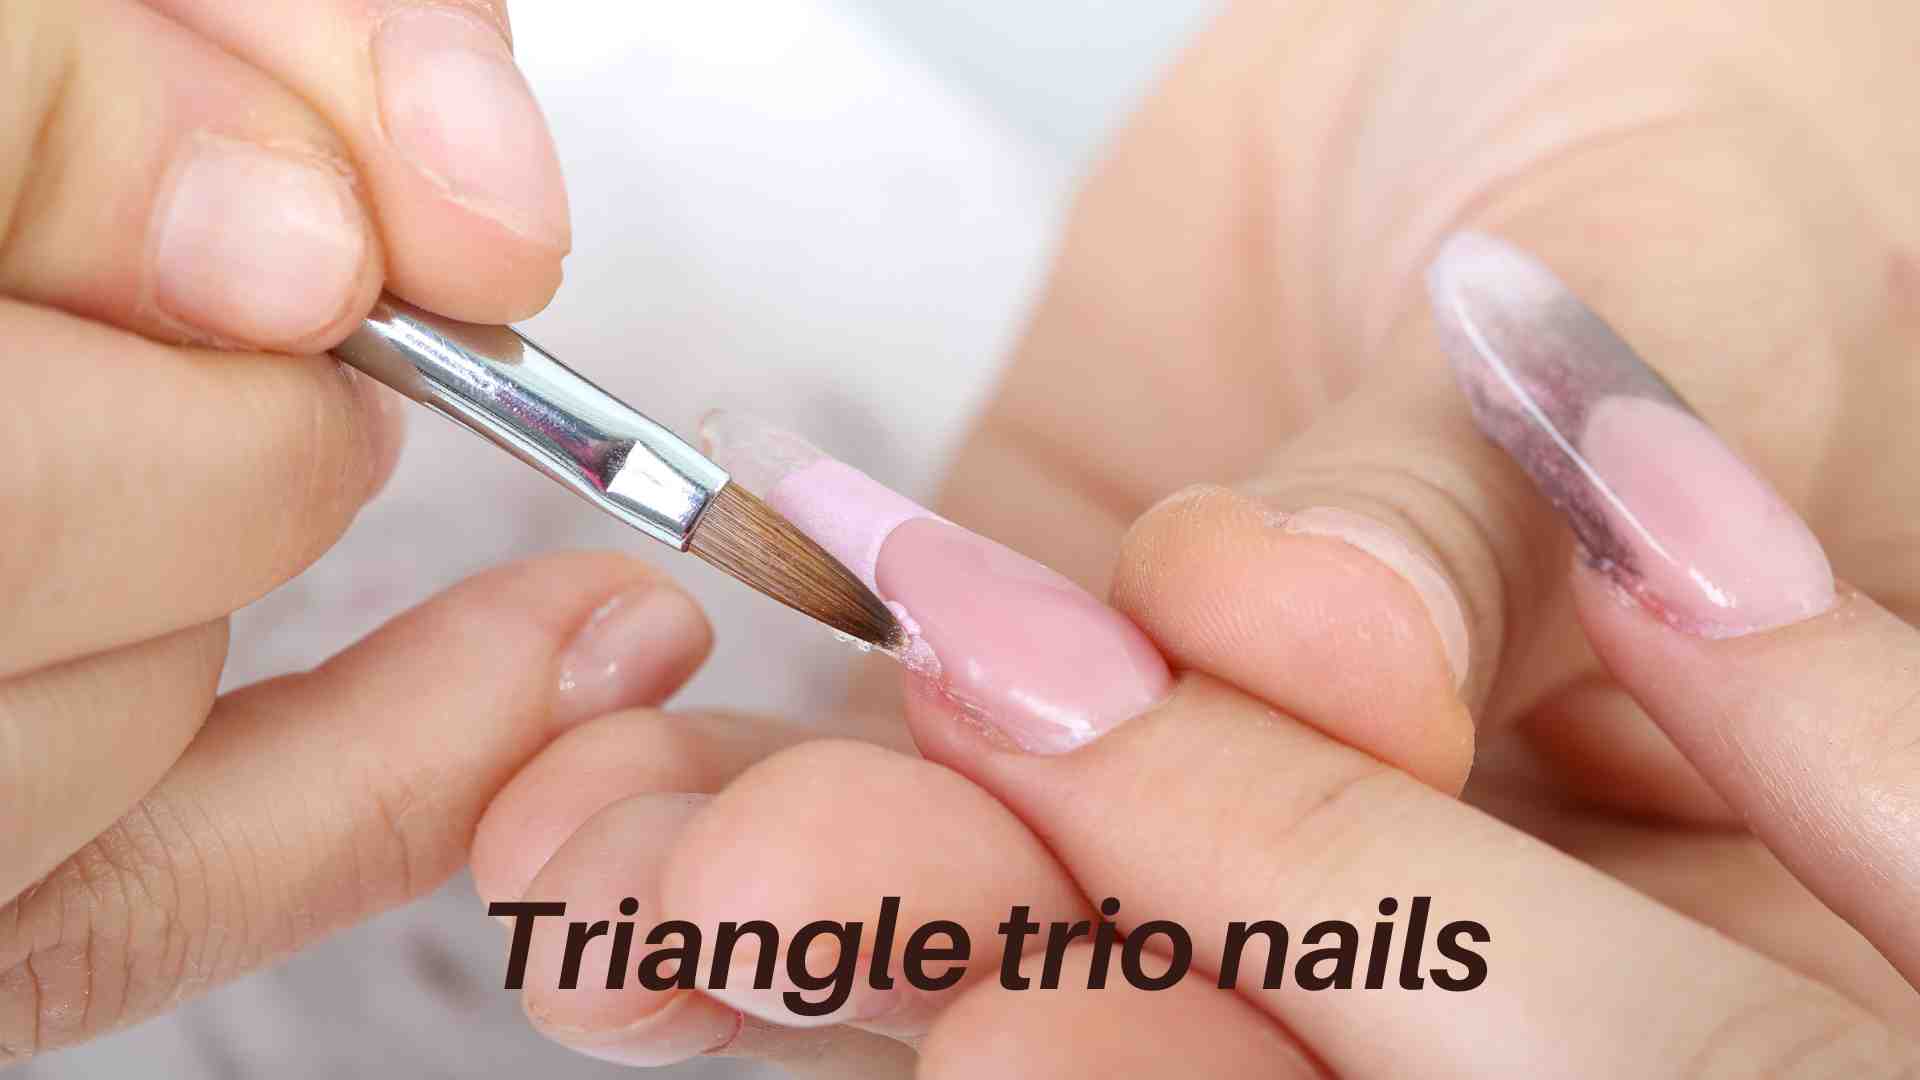 Triangle trio nails